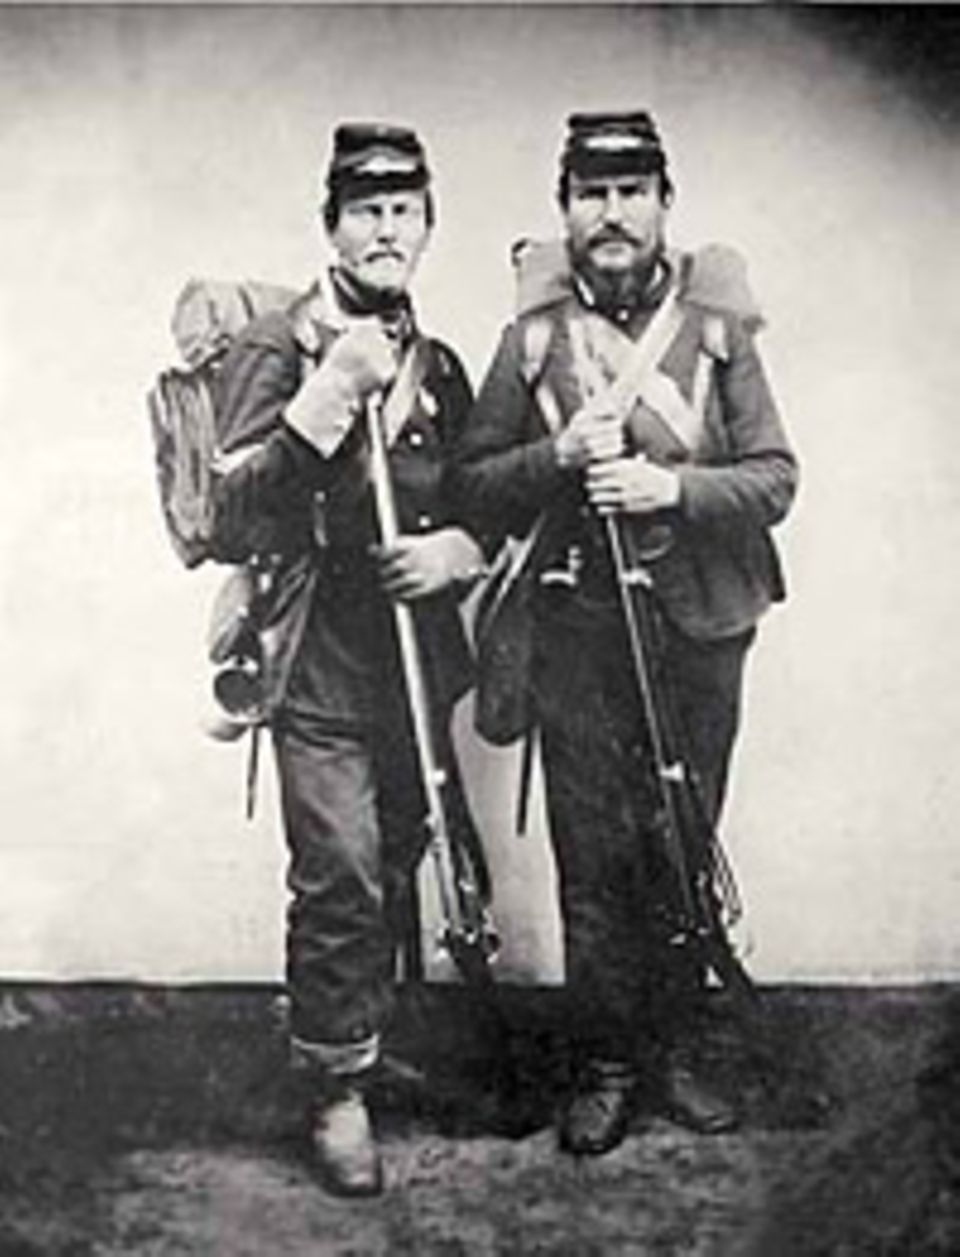 Die Brüder Henry (links) und Isaac Taylor, Lehrer aus Minnesota, haben sich nach Kriegsausbruch zur Nordstaatenarmee gemeldet. Ihr Regiment wird in Gettysburg fast drei Viertel seiner Männer verlieren